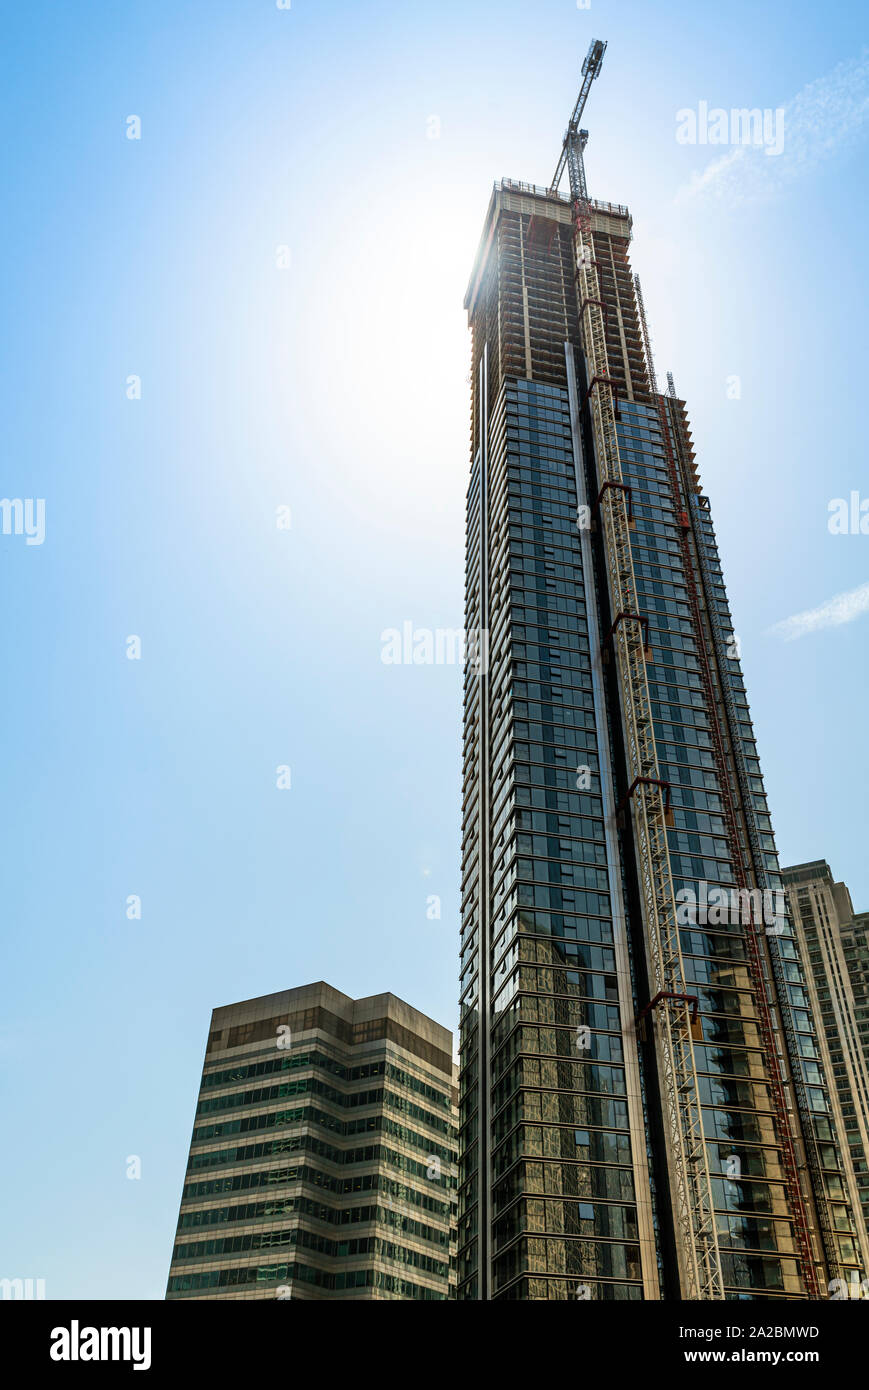 Nueva oficina modernos rascacielos que está siendo construido en una ciudad Foto de stock